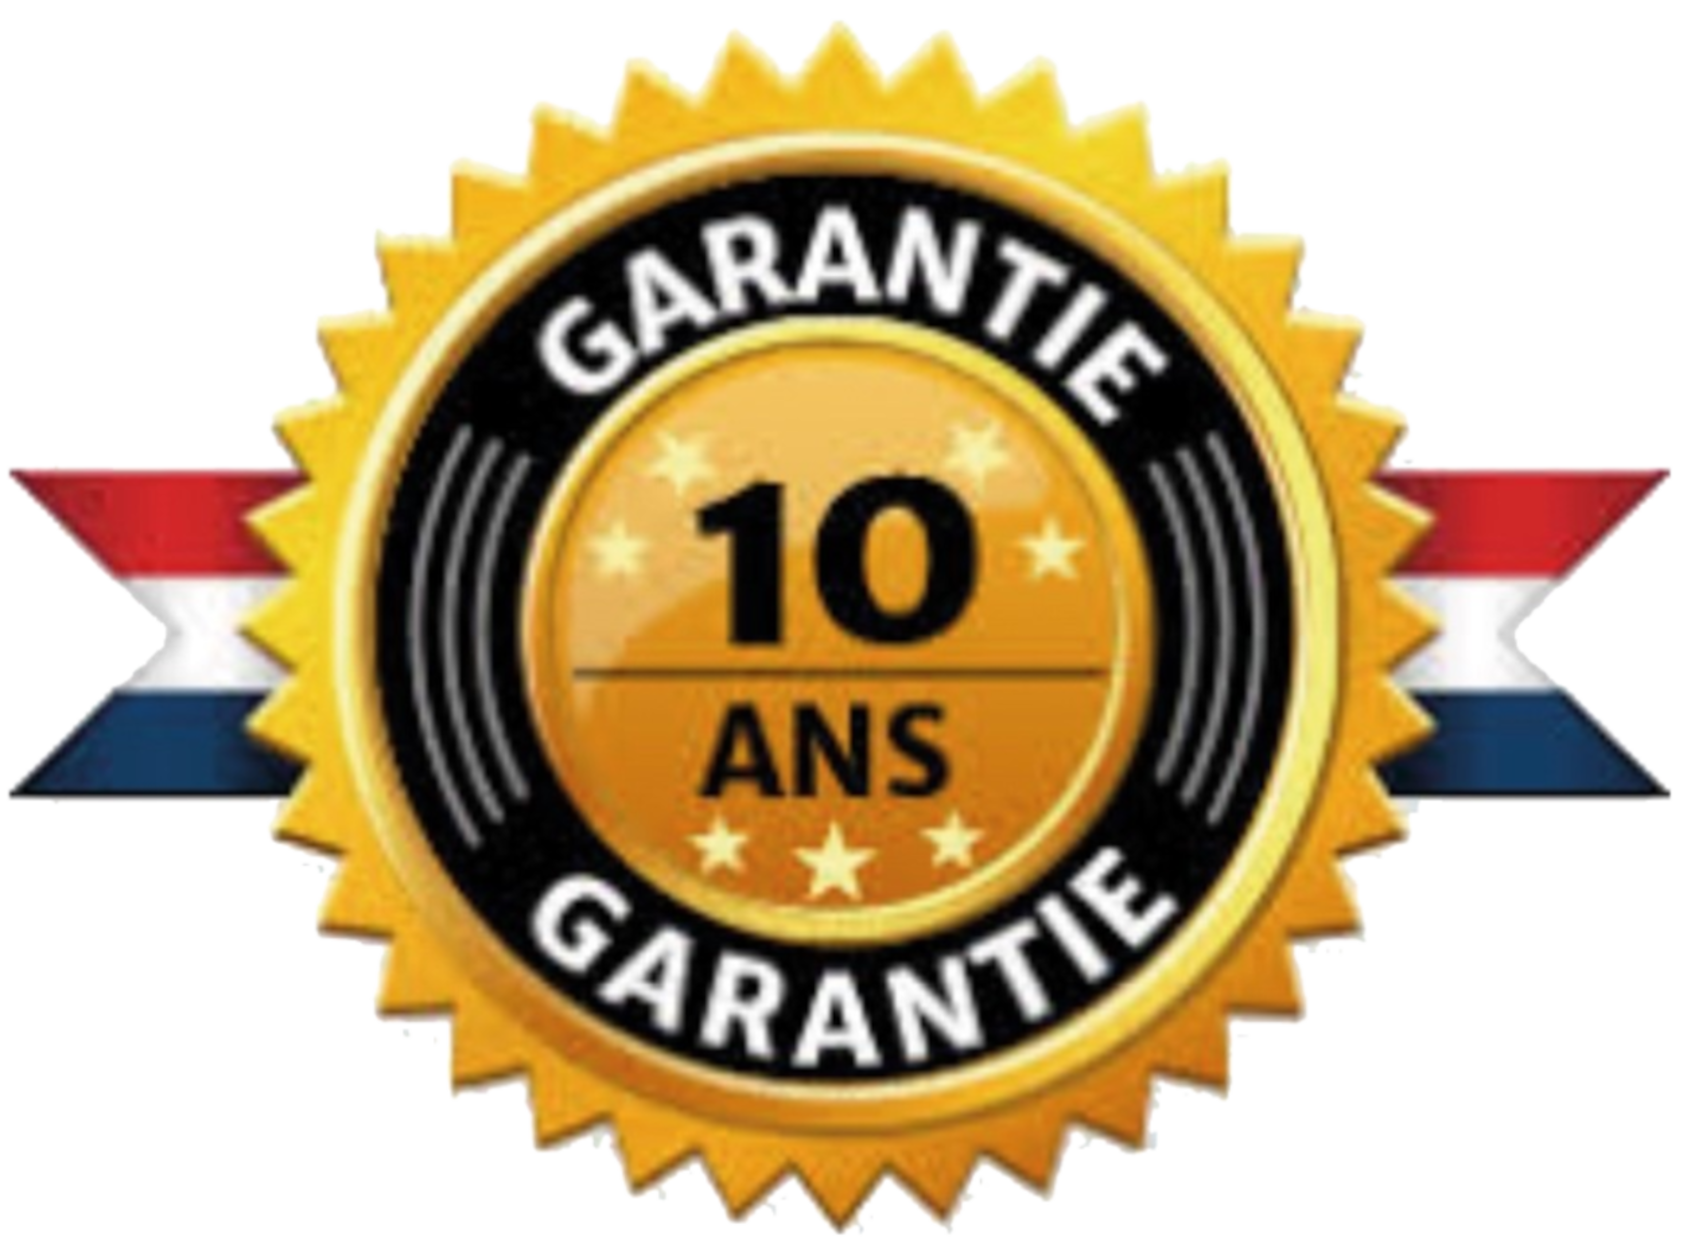 Label garantie 10 ans